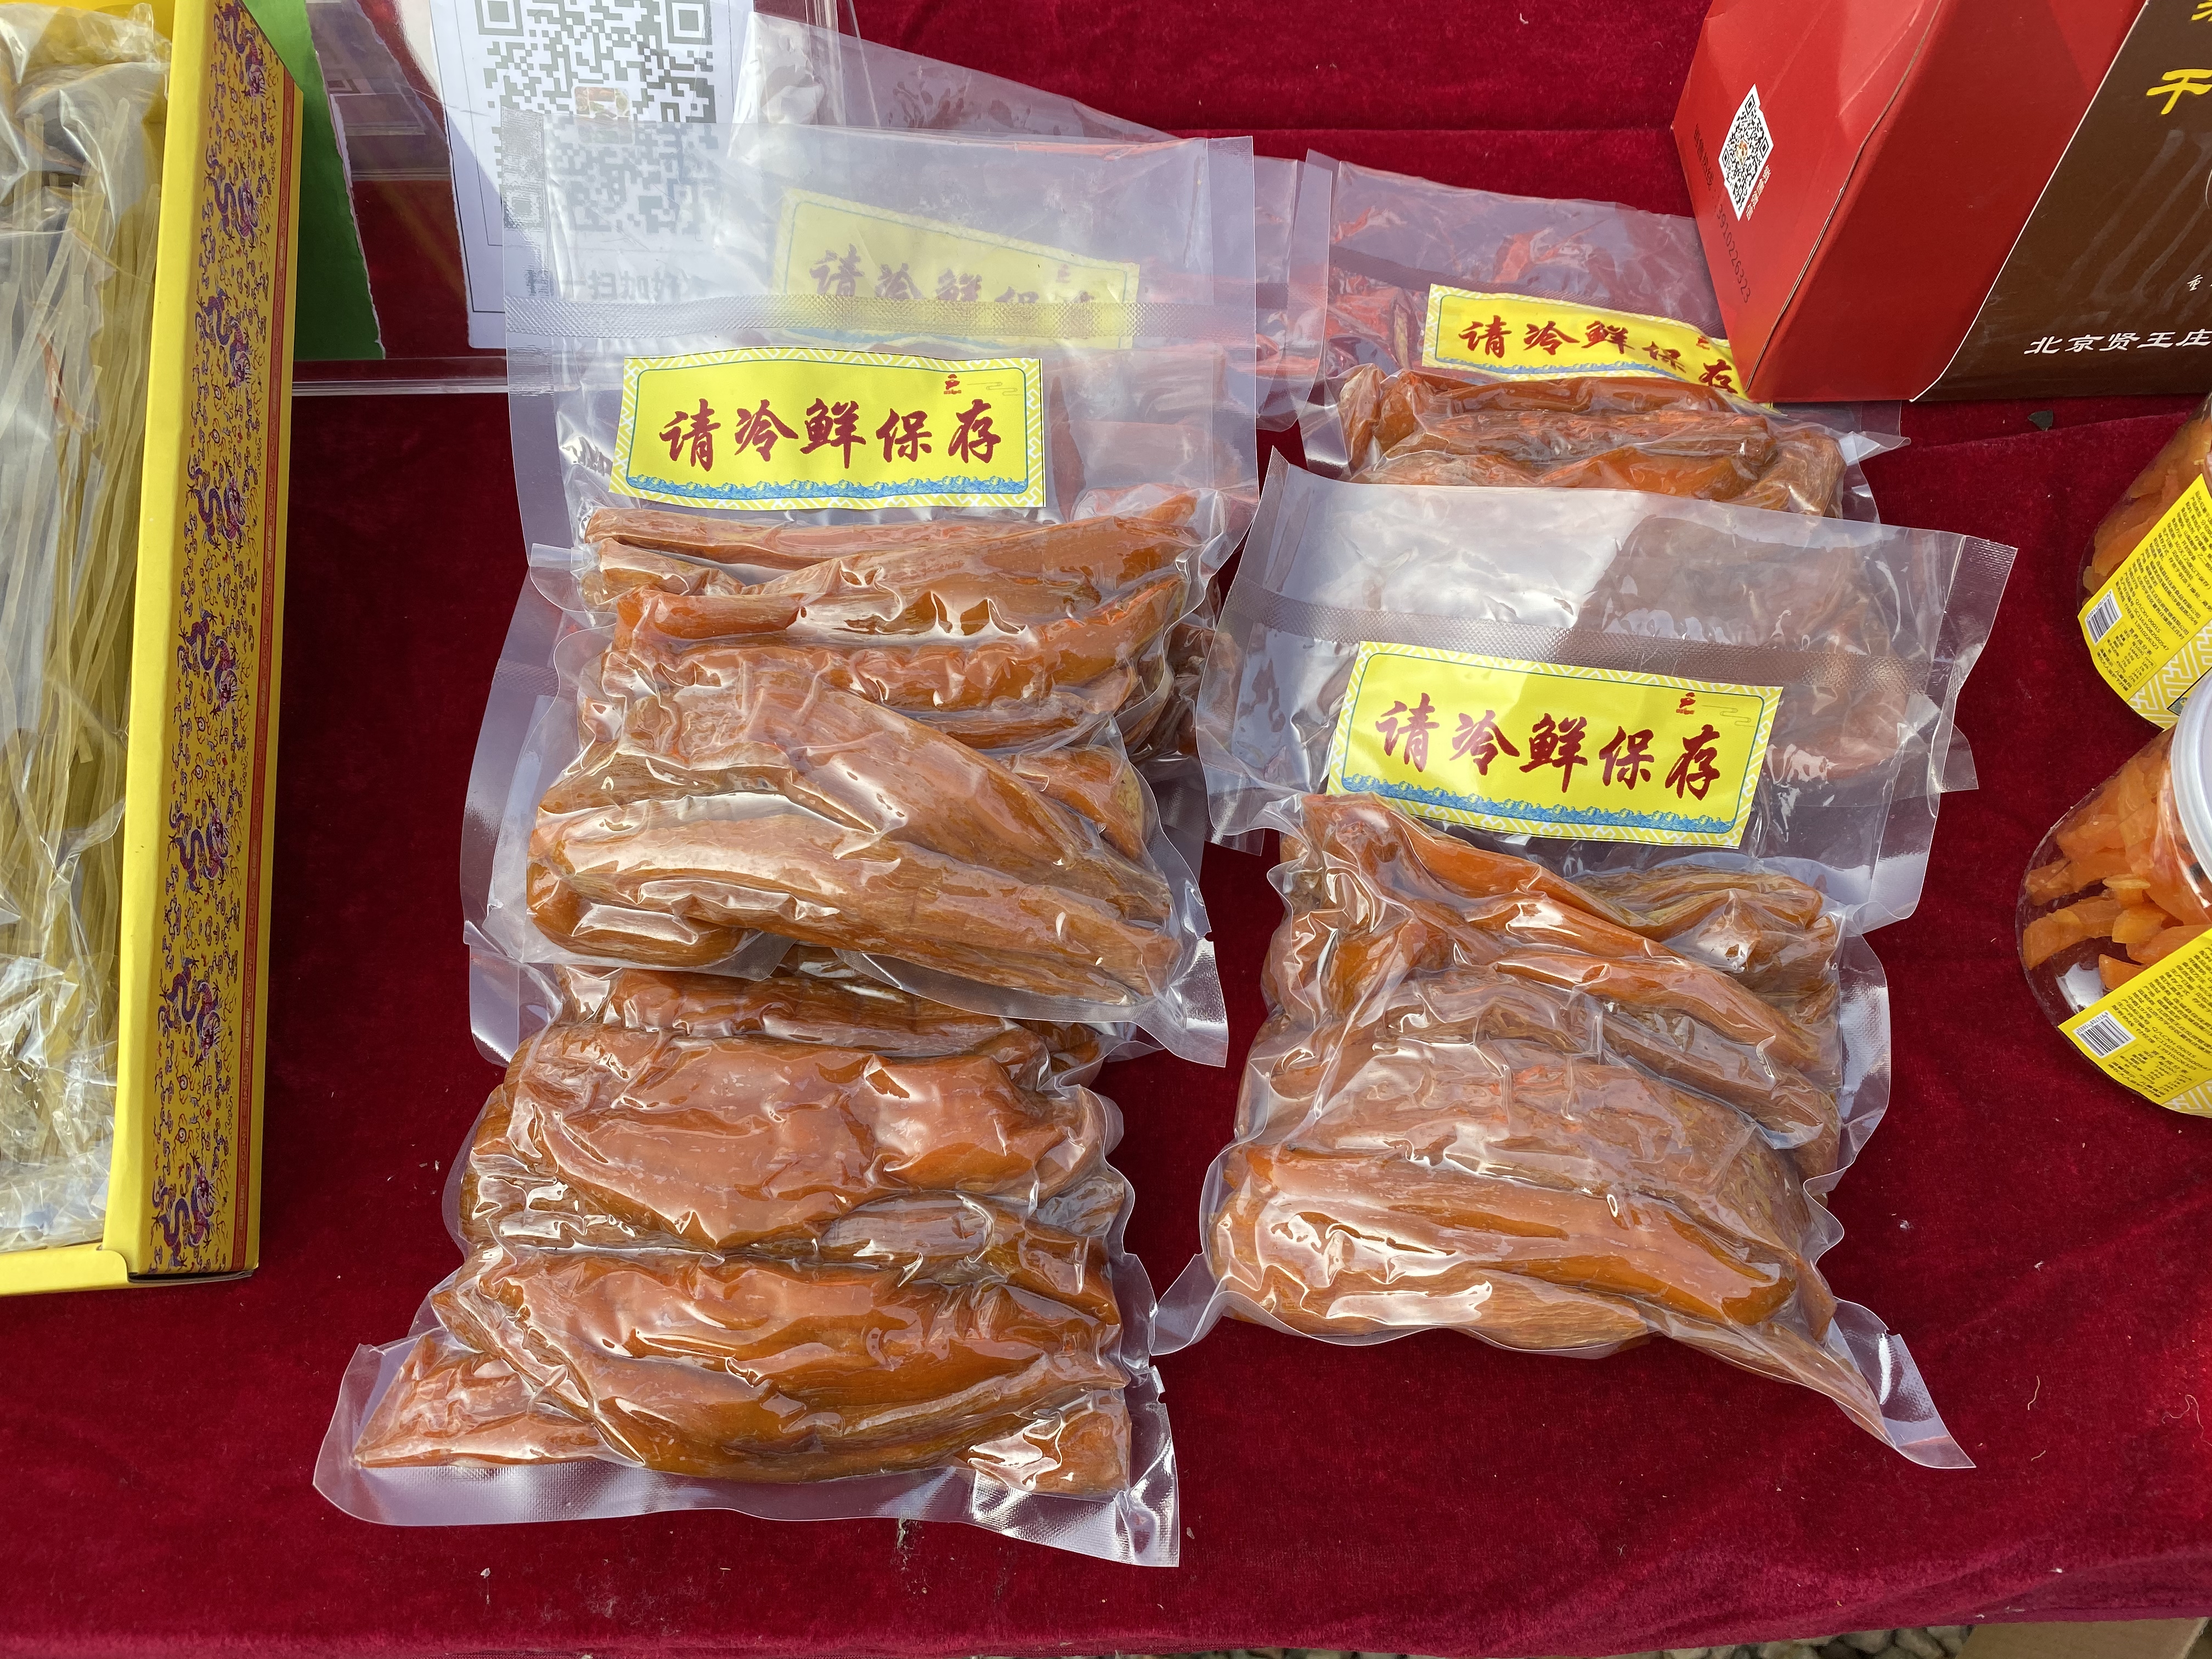 冬储红薯成熟平谷夏各庄镇贤王庄村举办红薯文化节